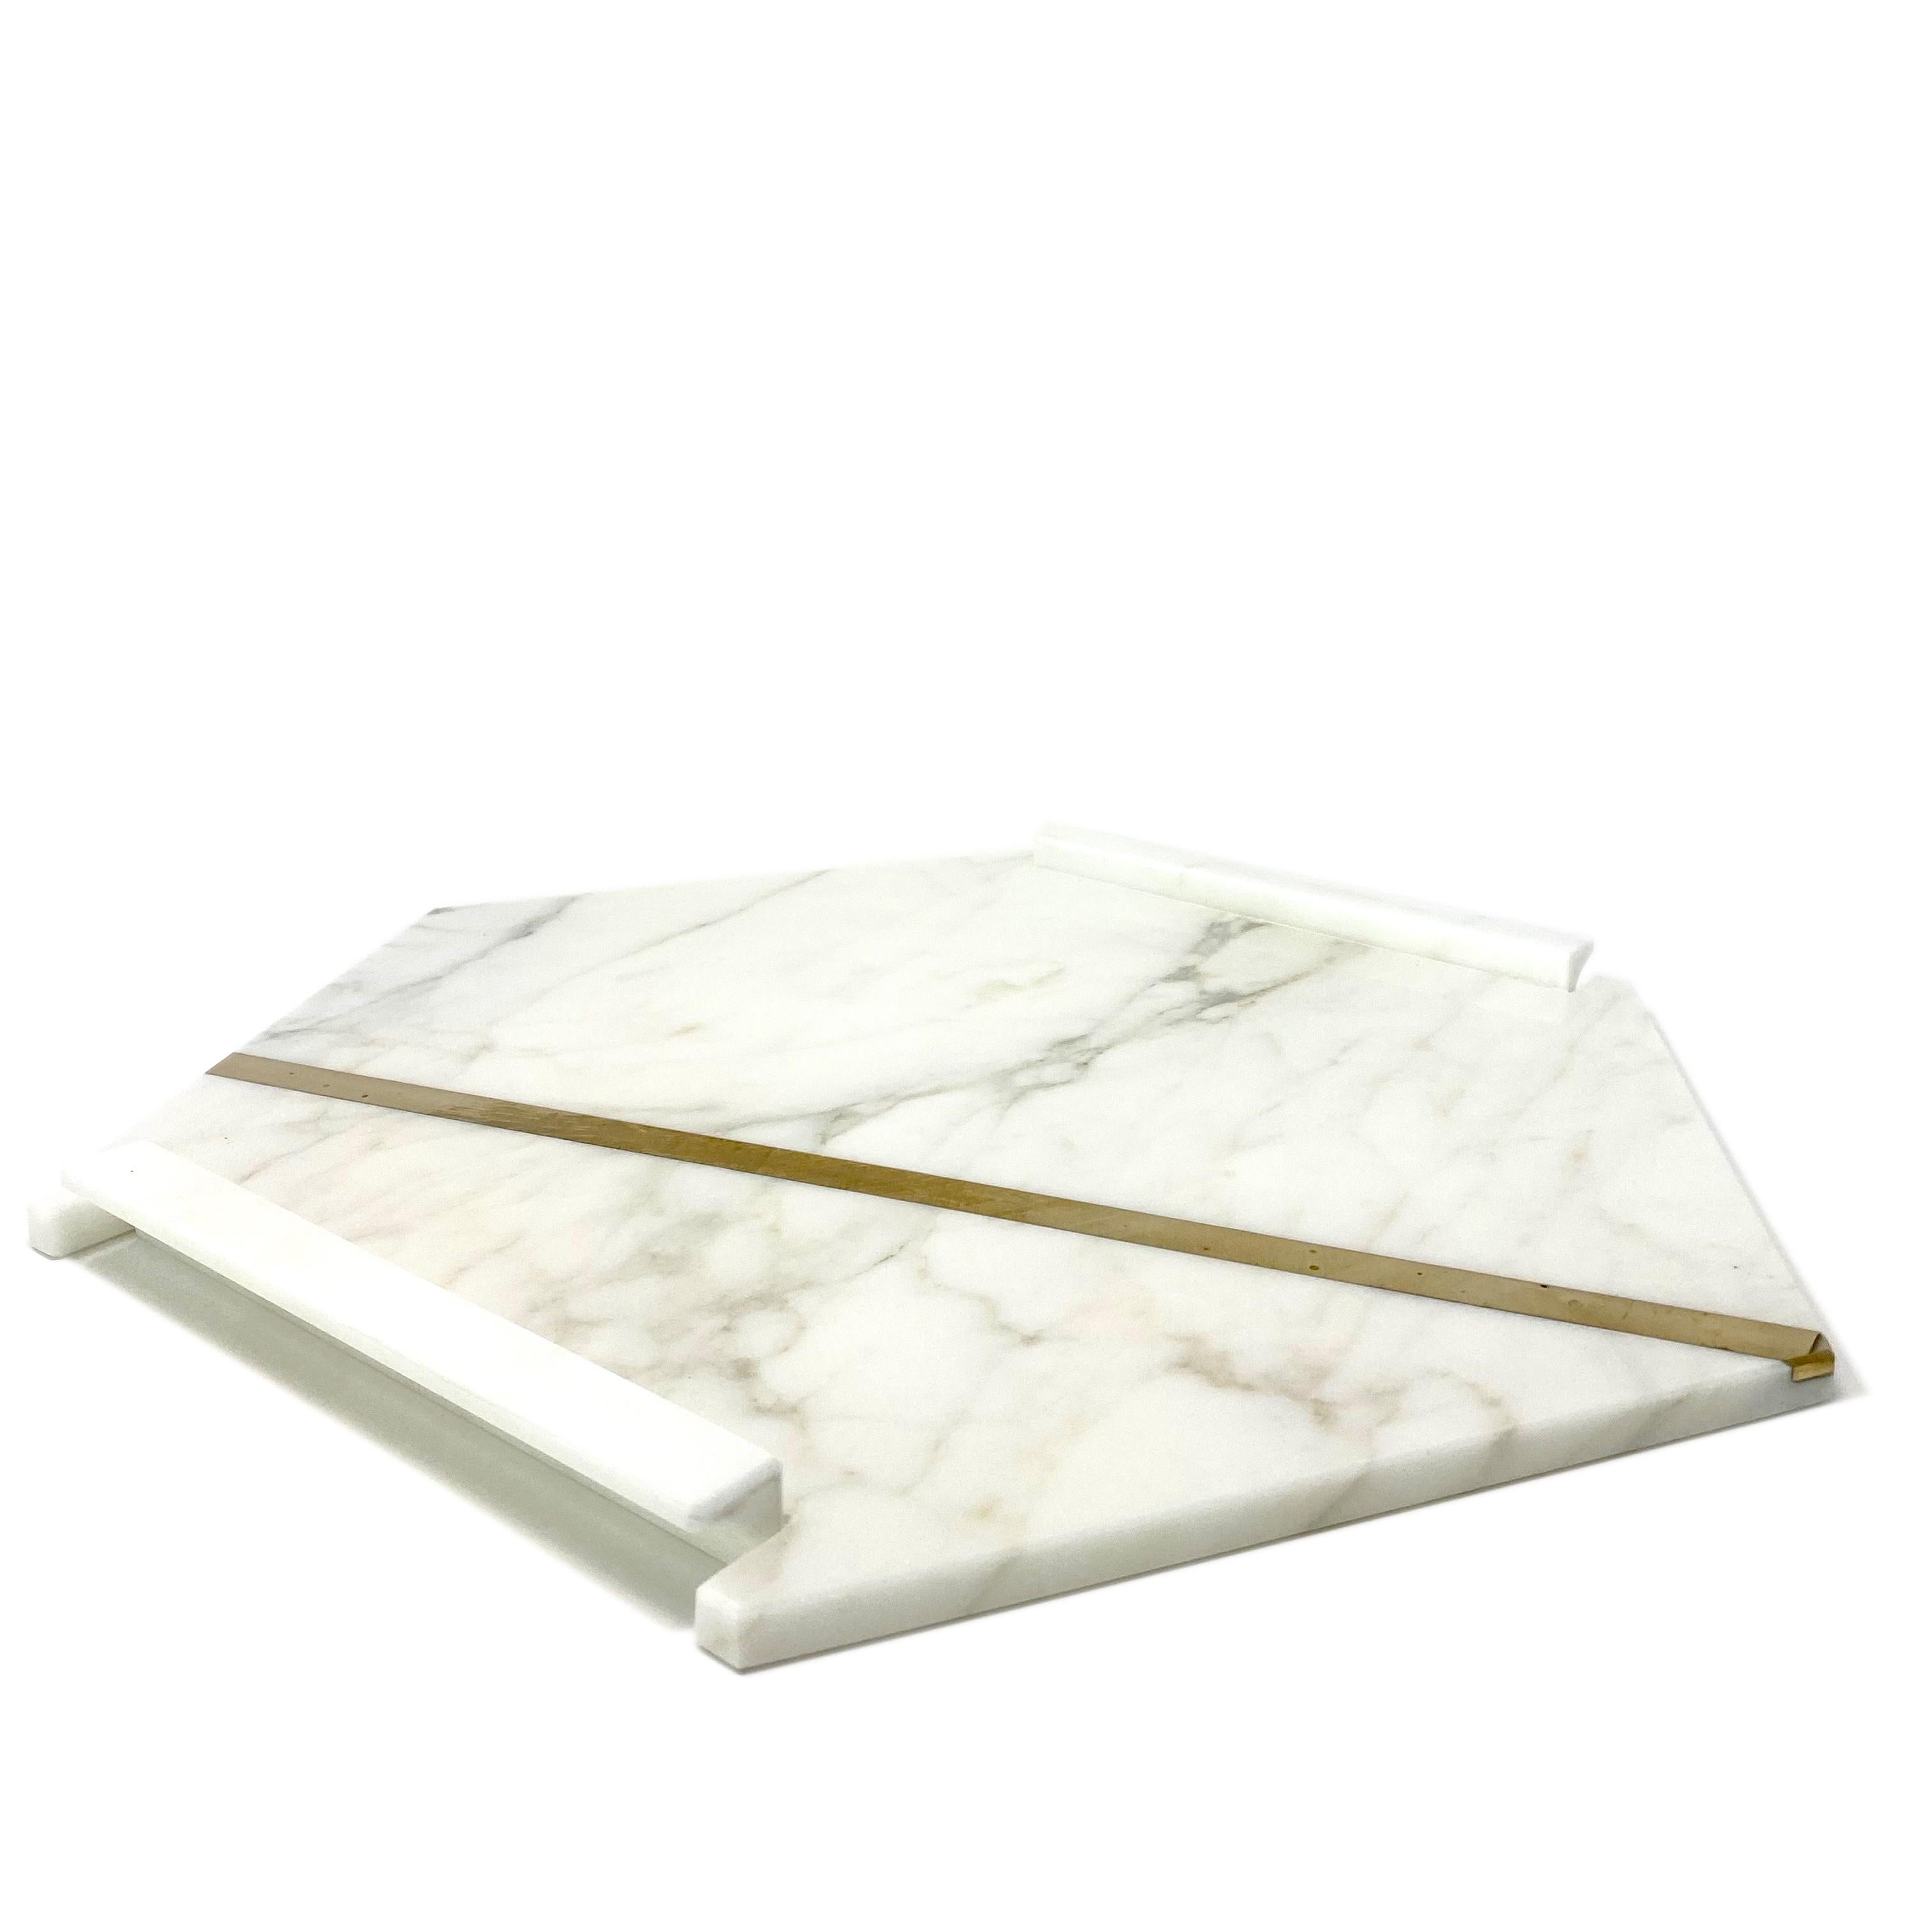 century marble tray